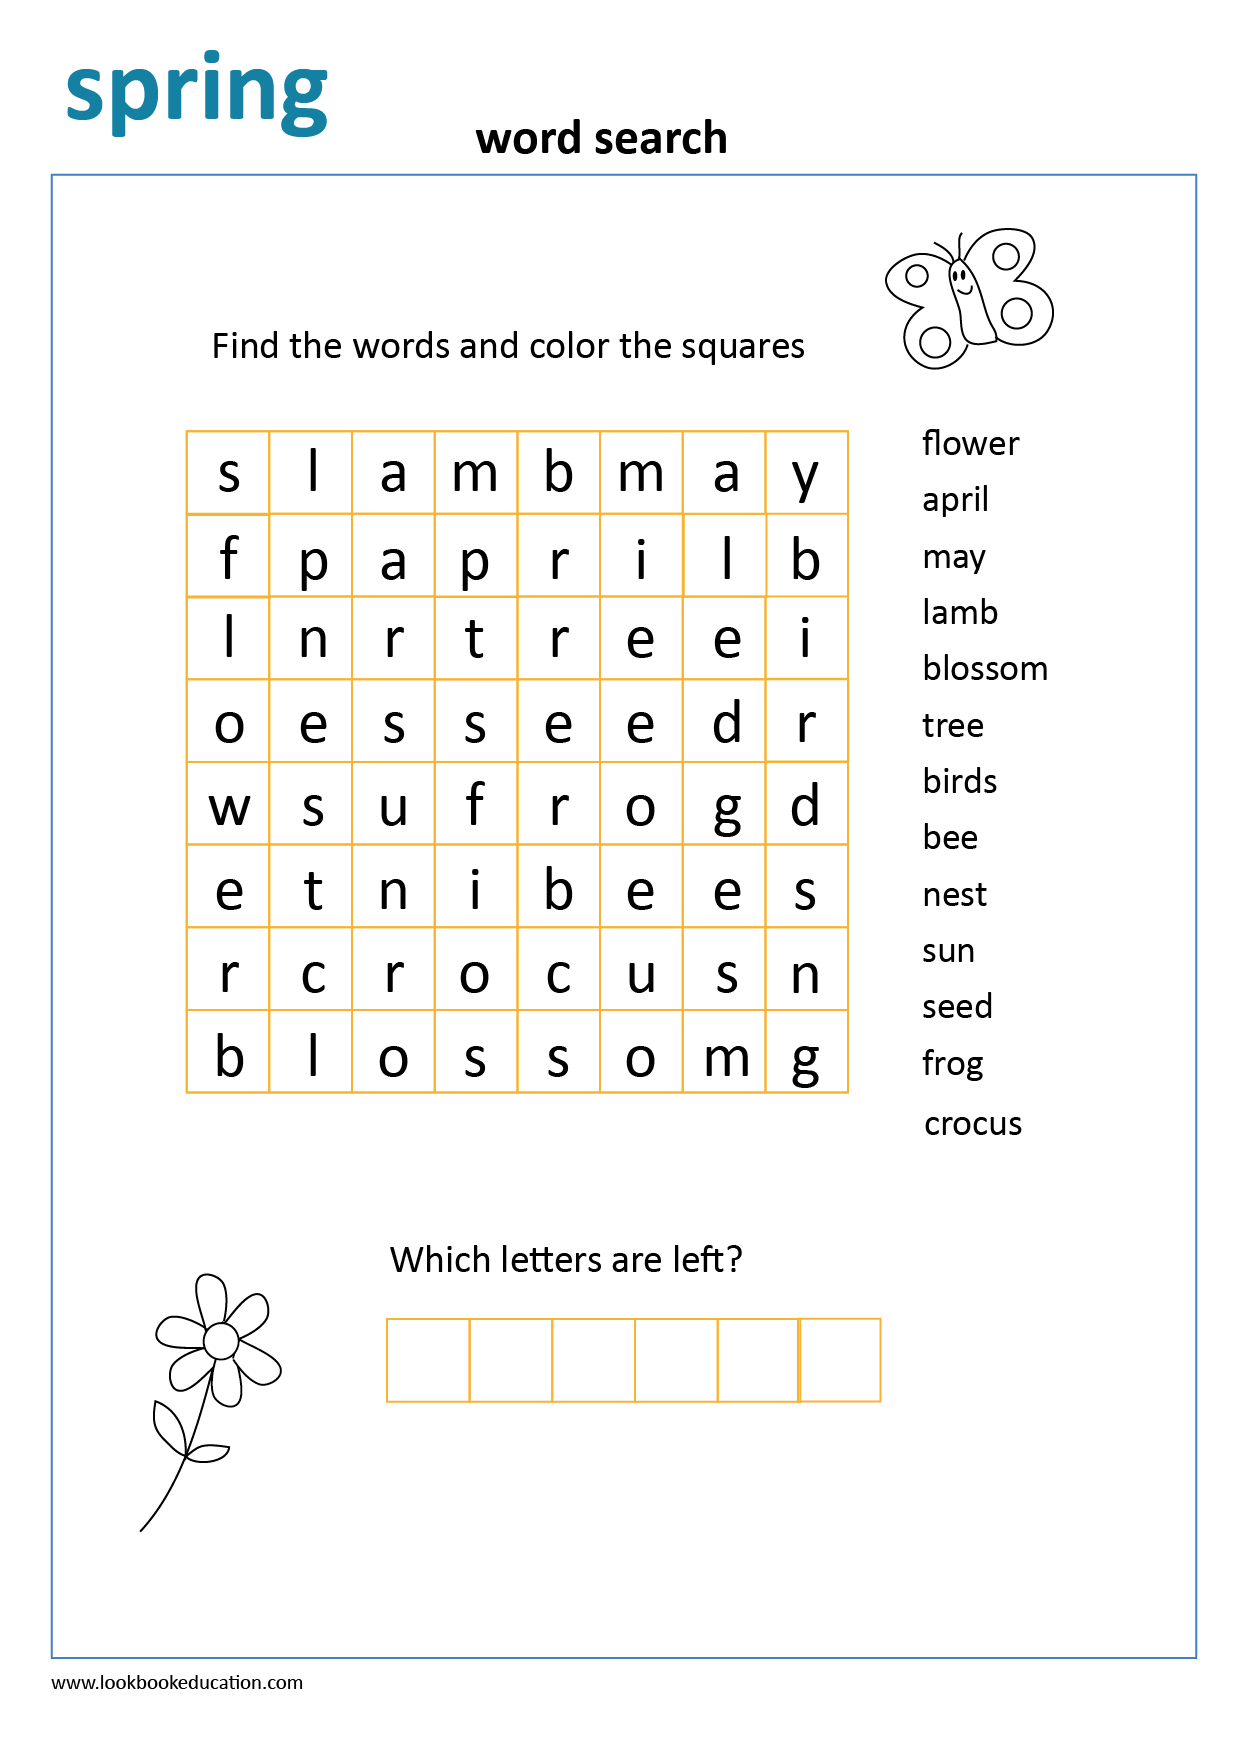 worksheet-spring-word-search-lookbook-education